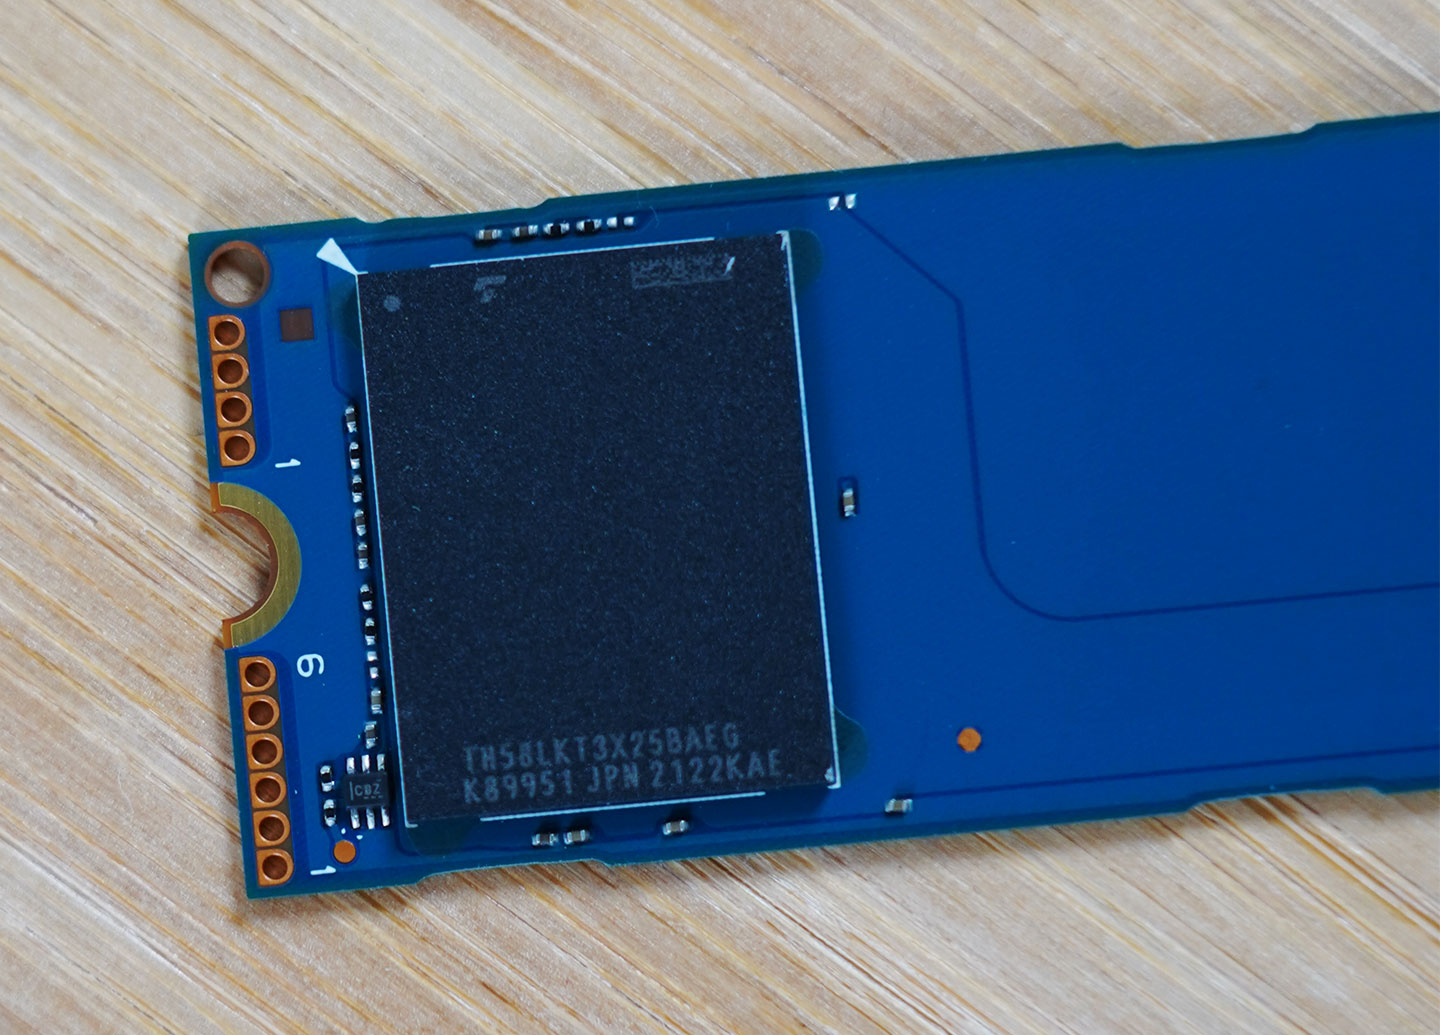 單顆 NAND Flash 晶片型號為 TH58LKT3X25BAEG，容量為 1TB。